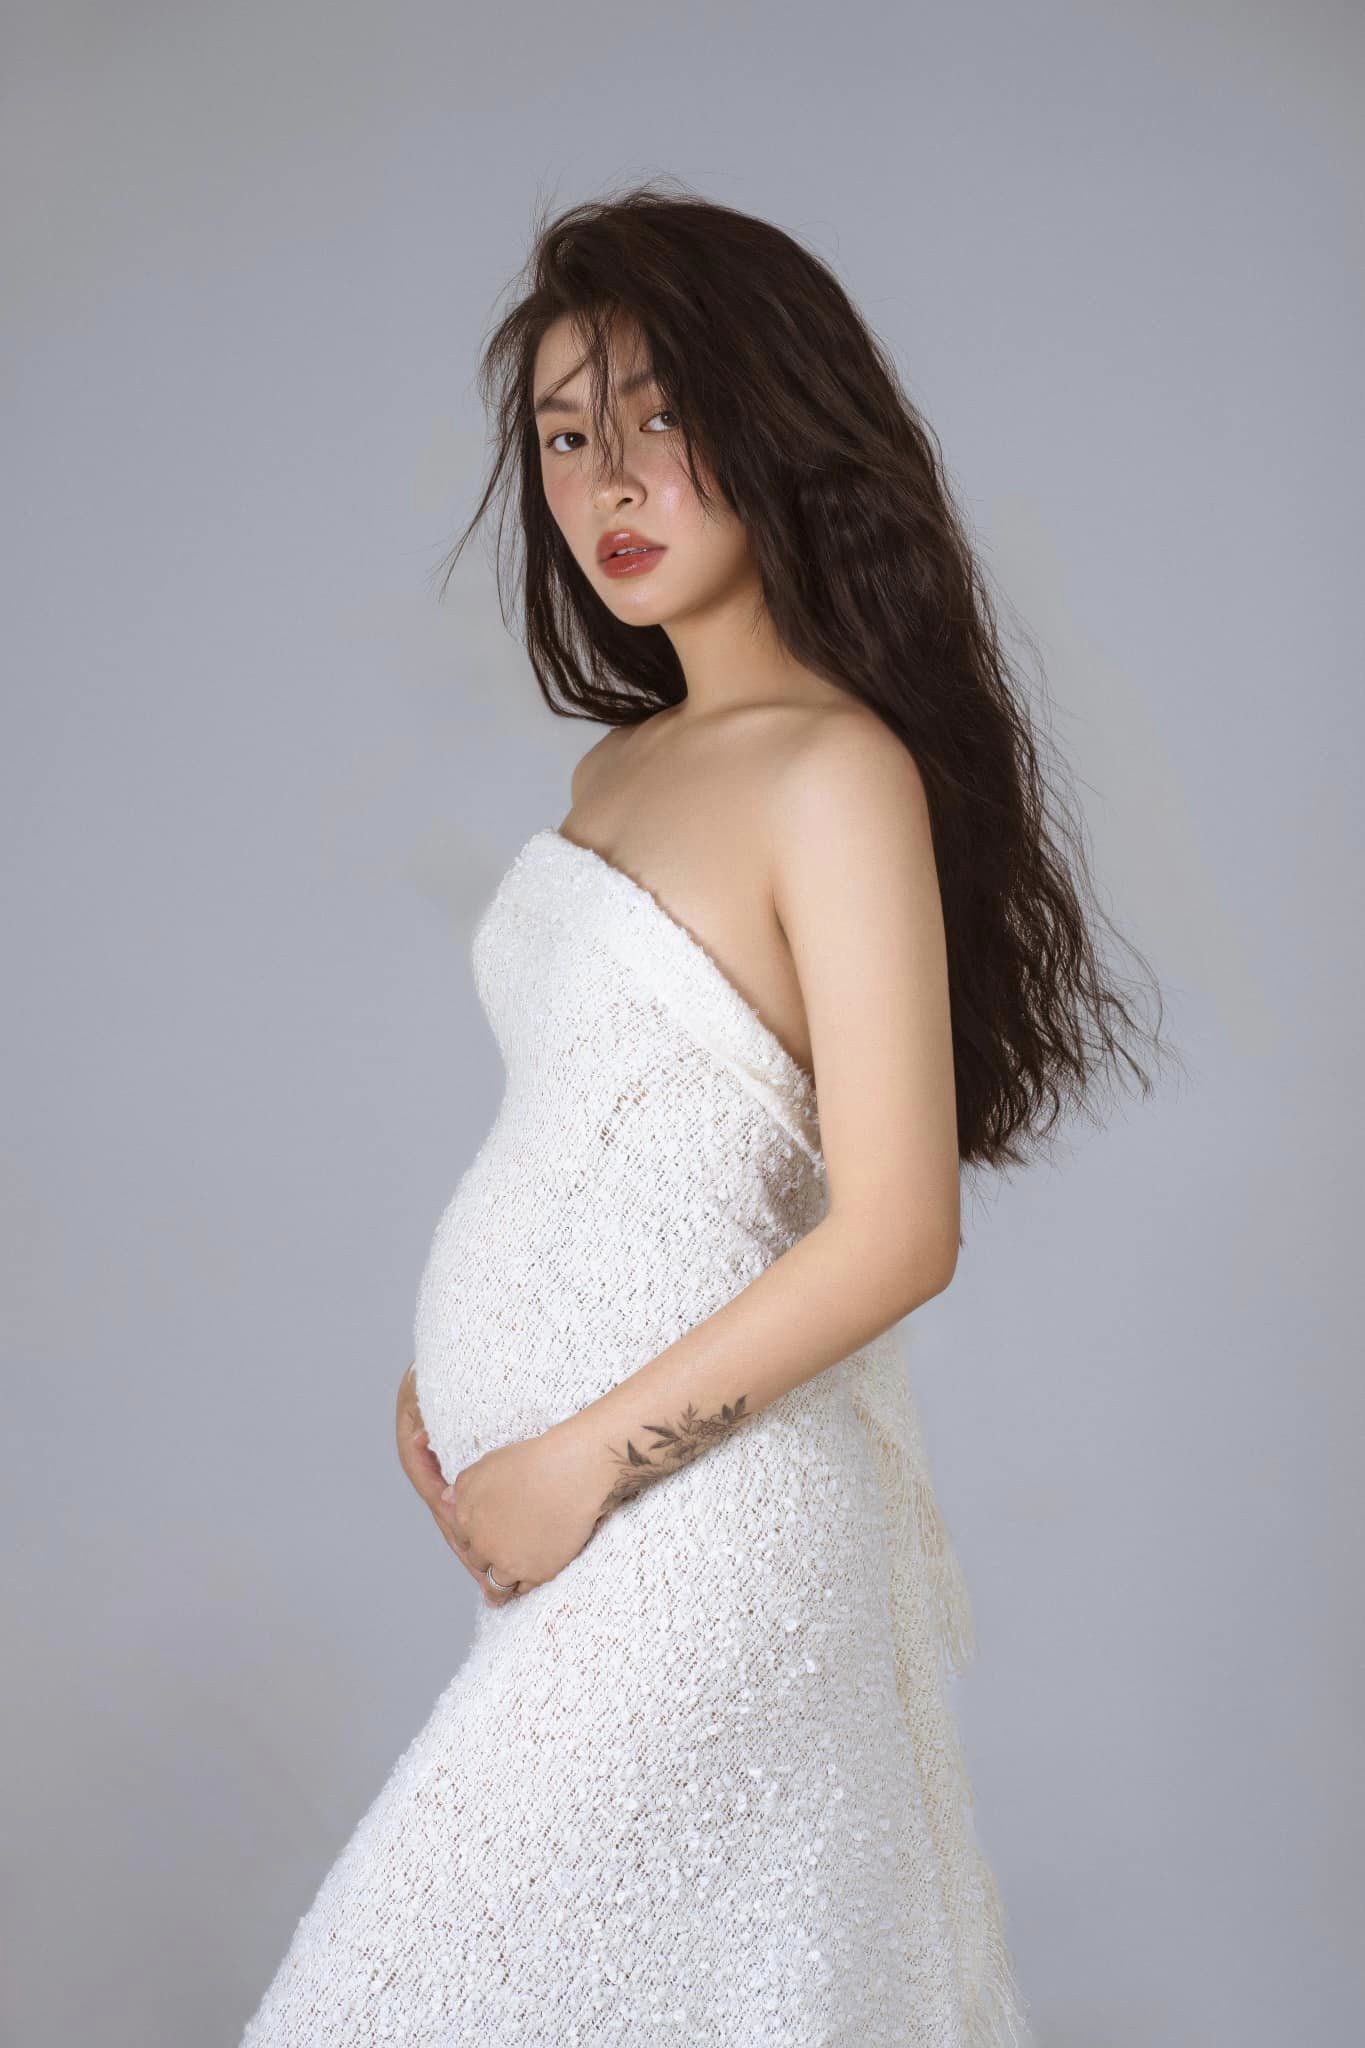 Em gái của TikToker Linda Ngô giải thích chuyện 'cưới chạy bầu' ở tuổi 22, quyết định có con sớm vì điều này - ảnh 1